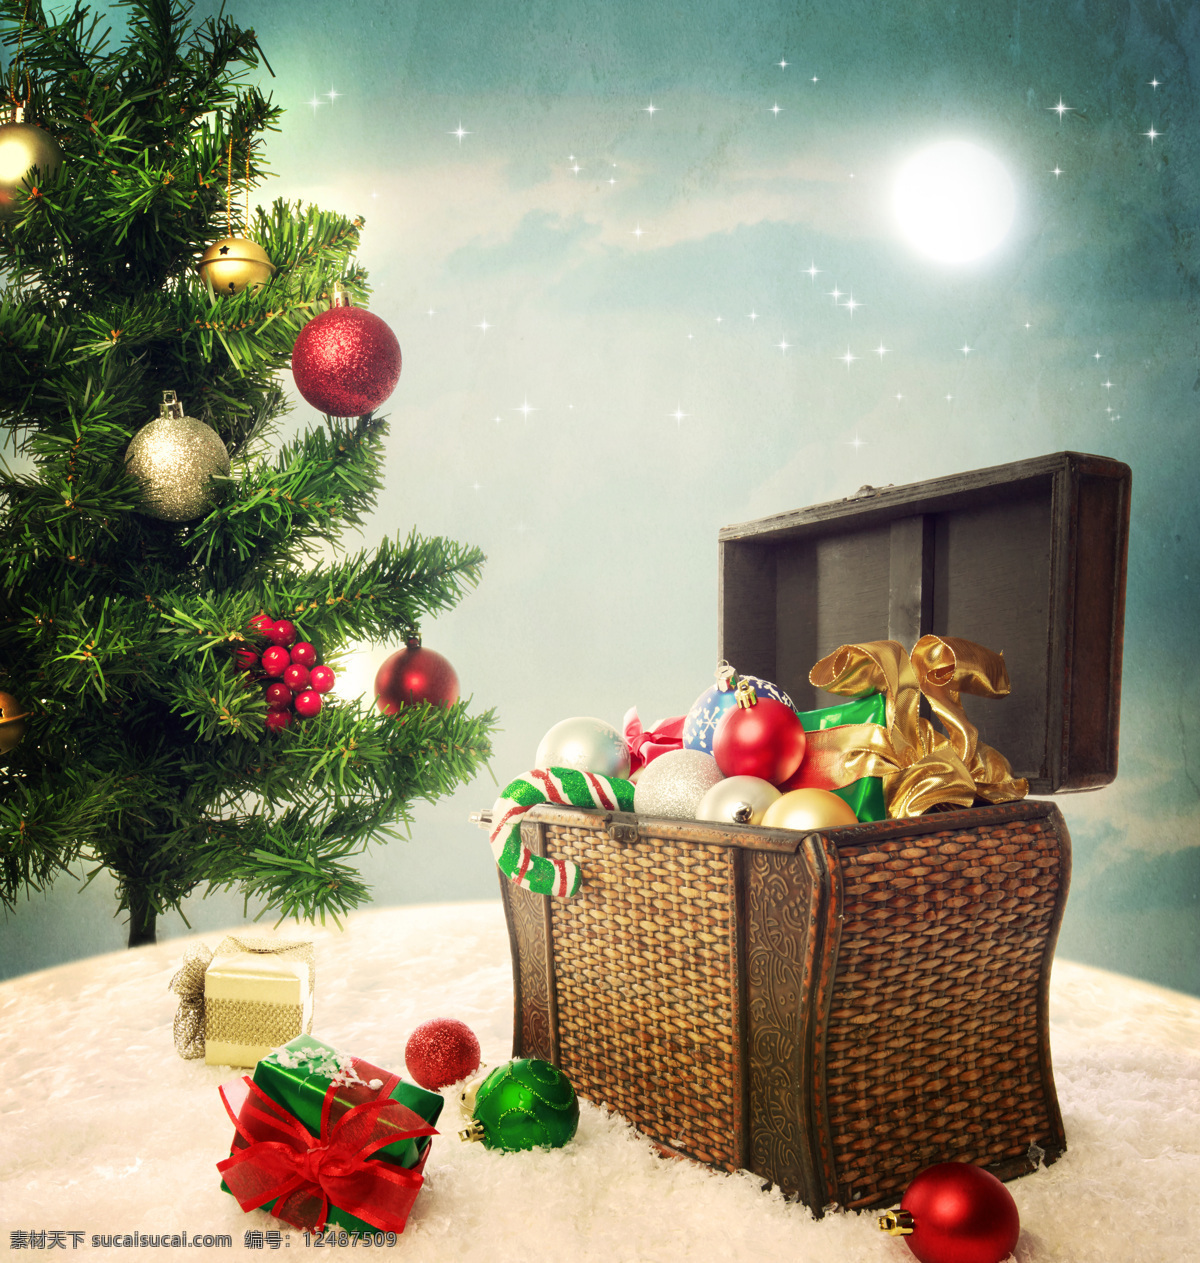 圣诞球 圣诞树 雪地 雪花 竹框 篮子 节日庆典 生活百科